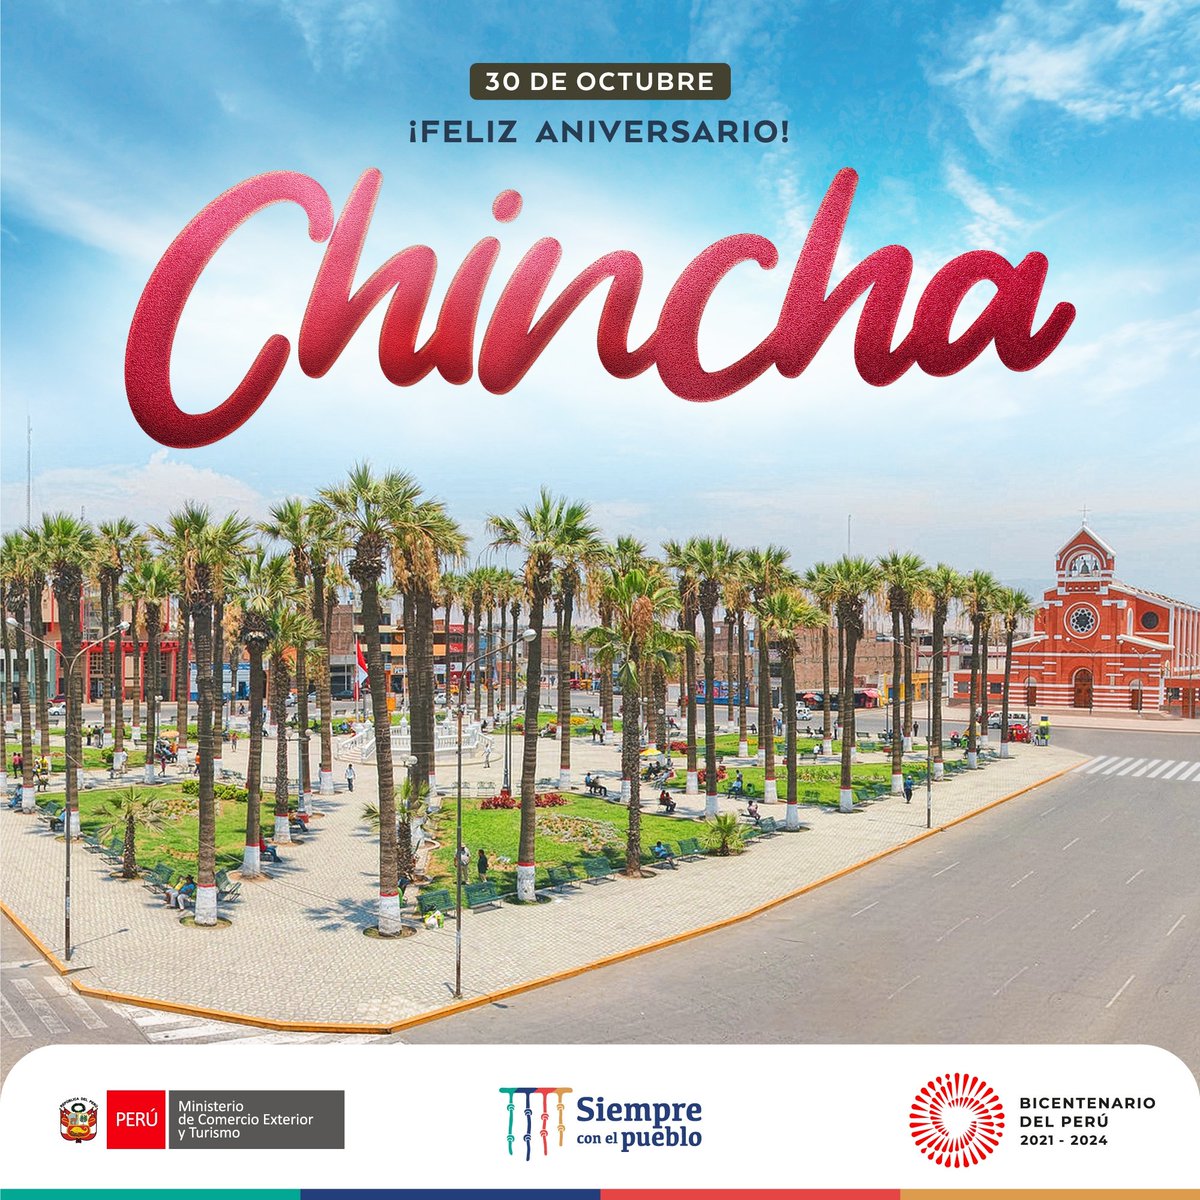 🎉¡Feliz aniversario Chincha! Esta hermosa provincia, cuna de la cultura afroperuana celebra a lo grande su 154° aniversario. Goza con su sabrosa gastronomía, contagiante música, danzas y tradiciones.✨ ¡Vamos pa’ #Chincha familia!👏🤩